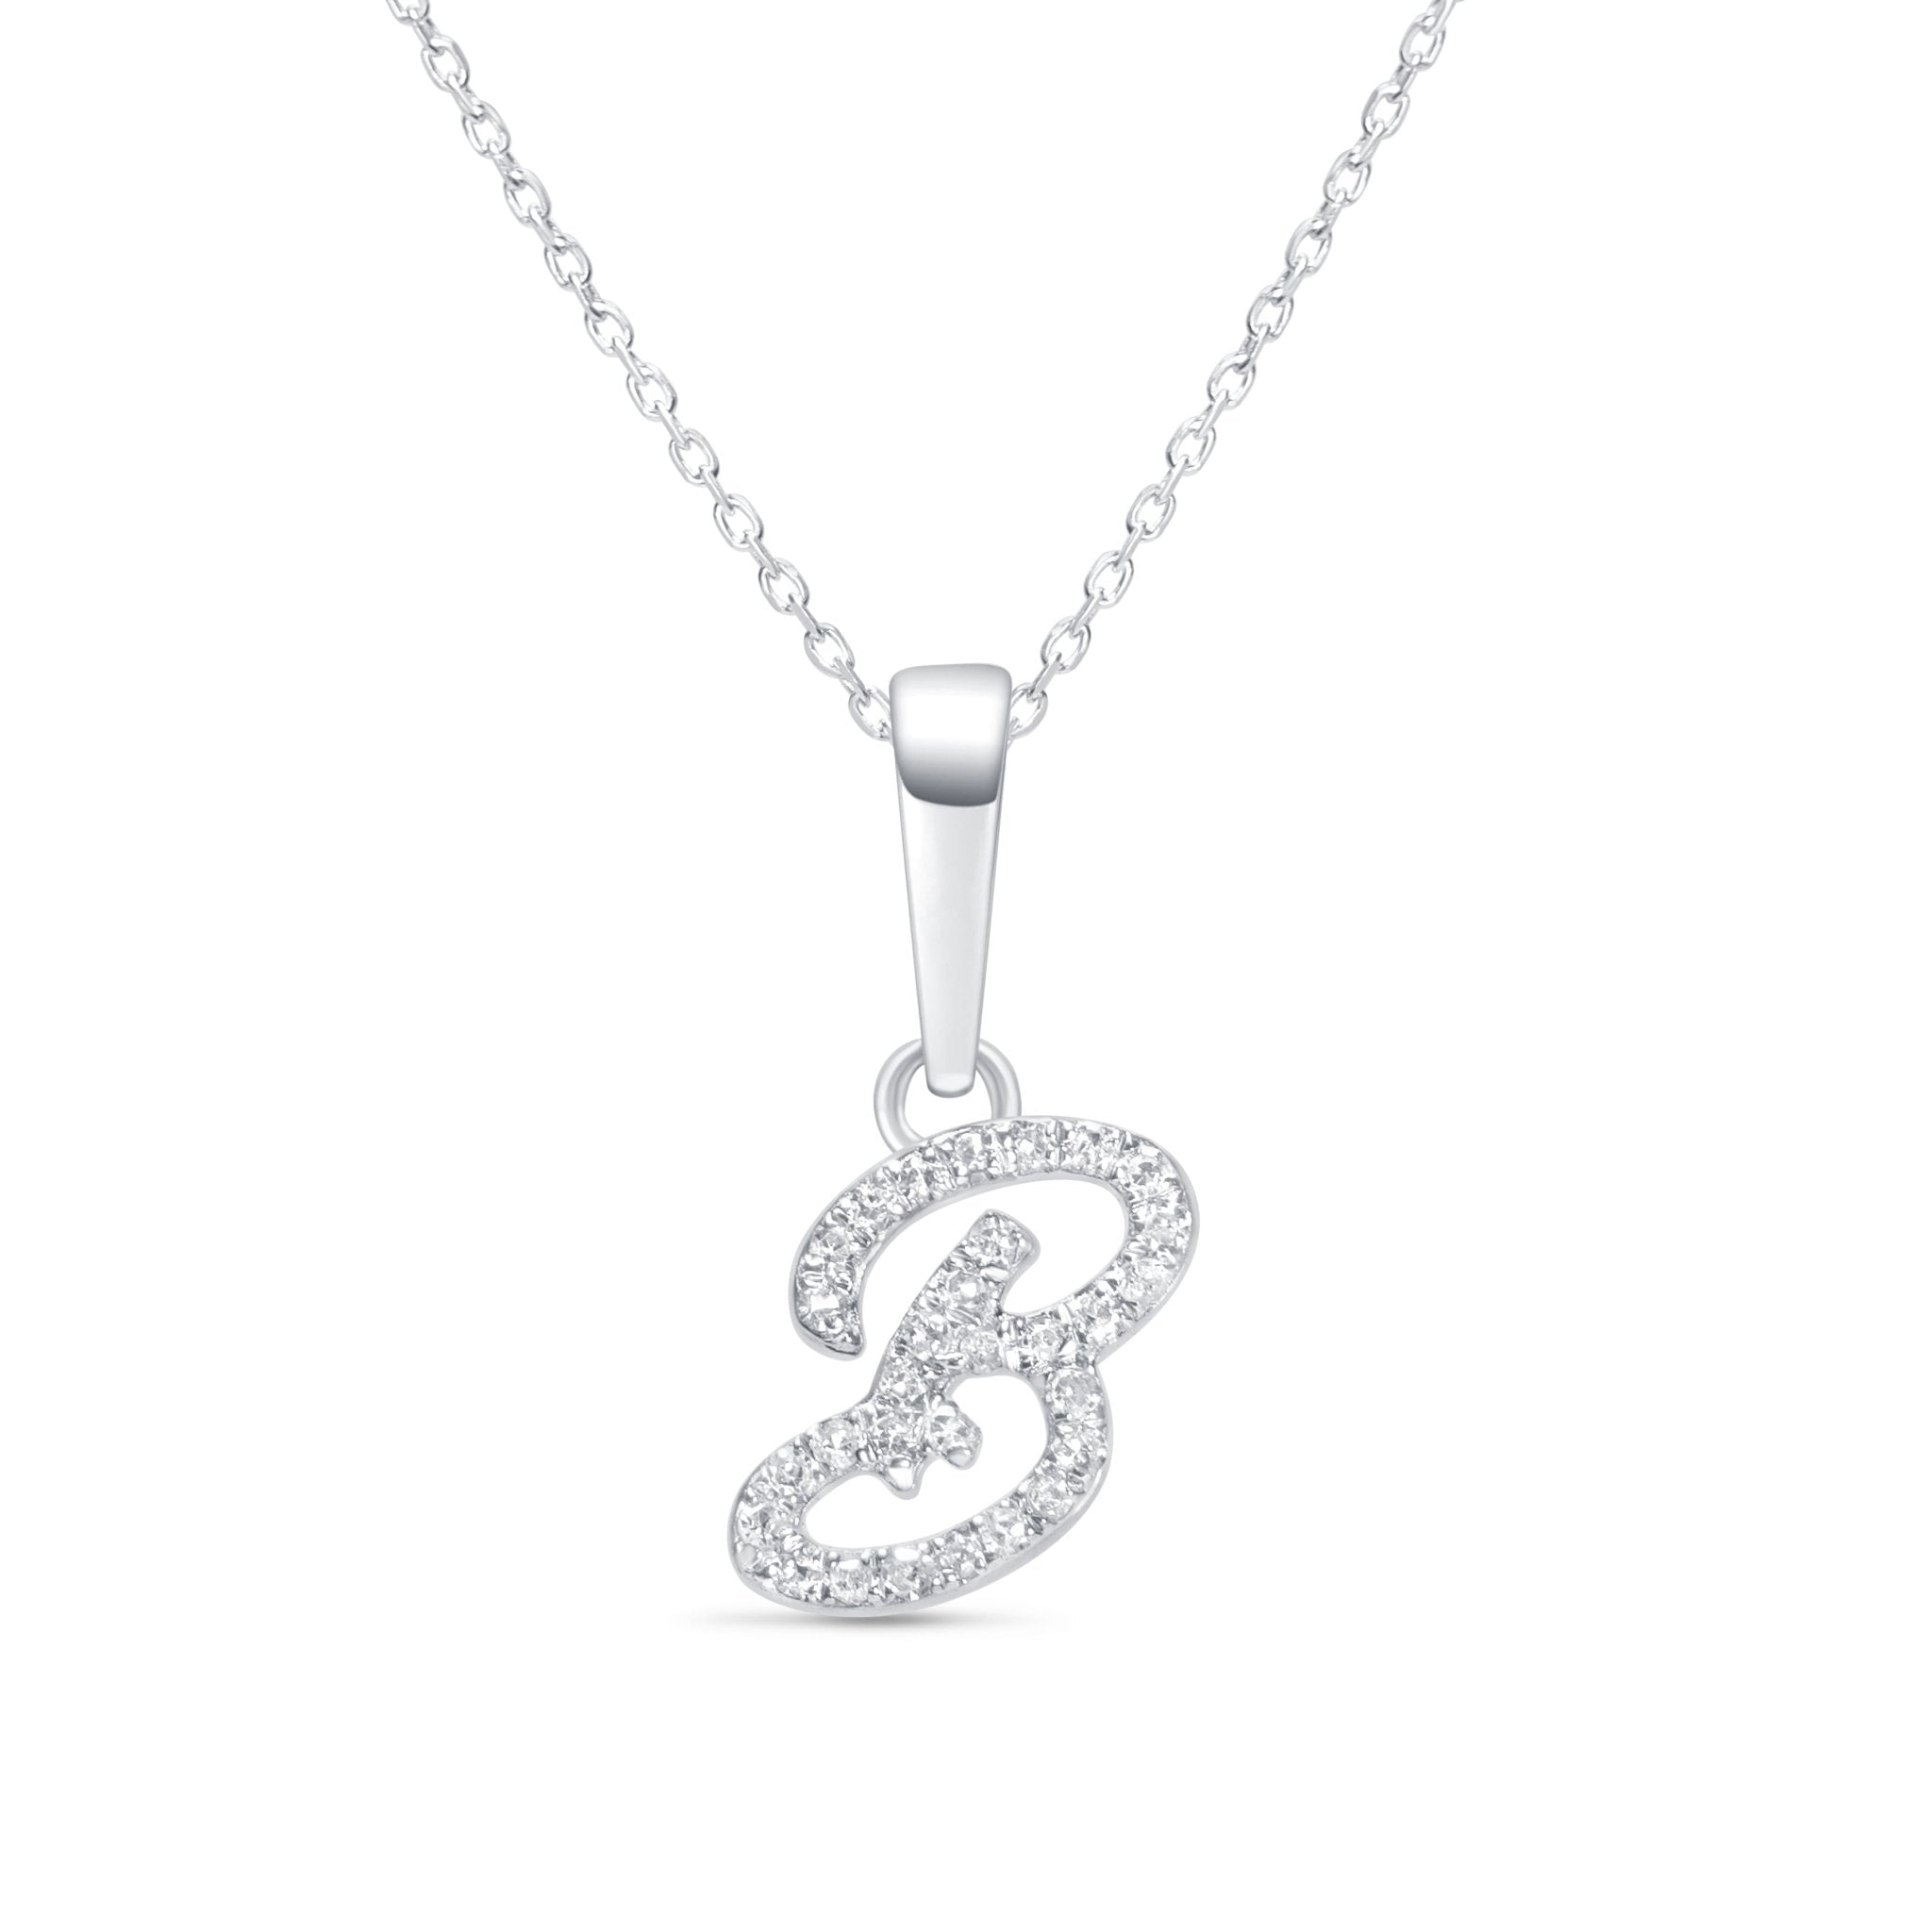 Cursive Diamond Initial Necklace - B Necklaces Estella Collection #product_description# 18557 14k Diamond Gemstone #tag4# #tag5# #tag6# #tag7# #tag8# #tag9# #tag10# 14k White Gold